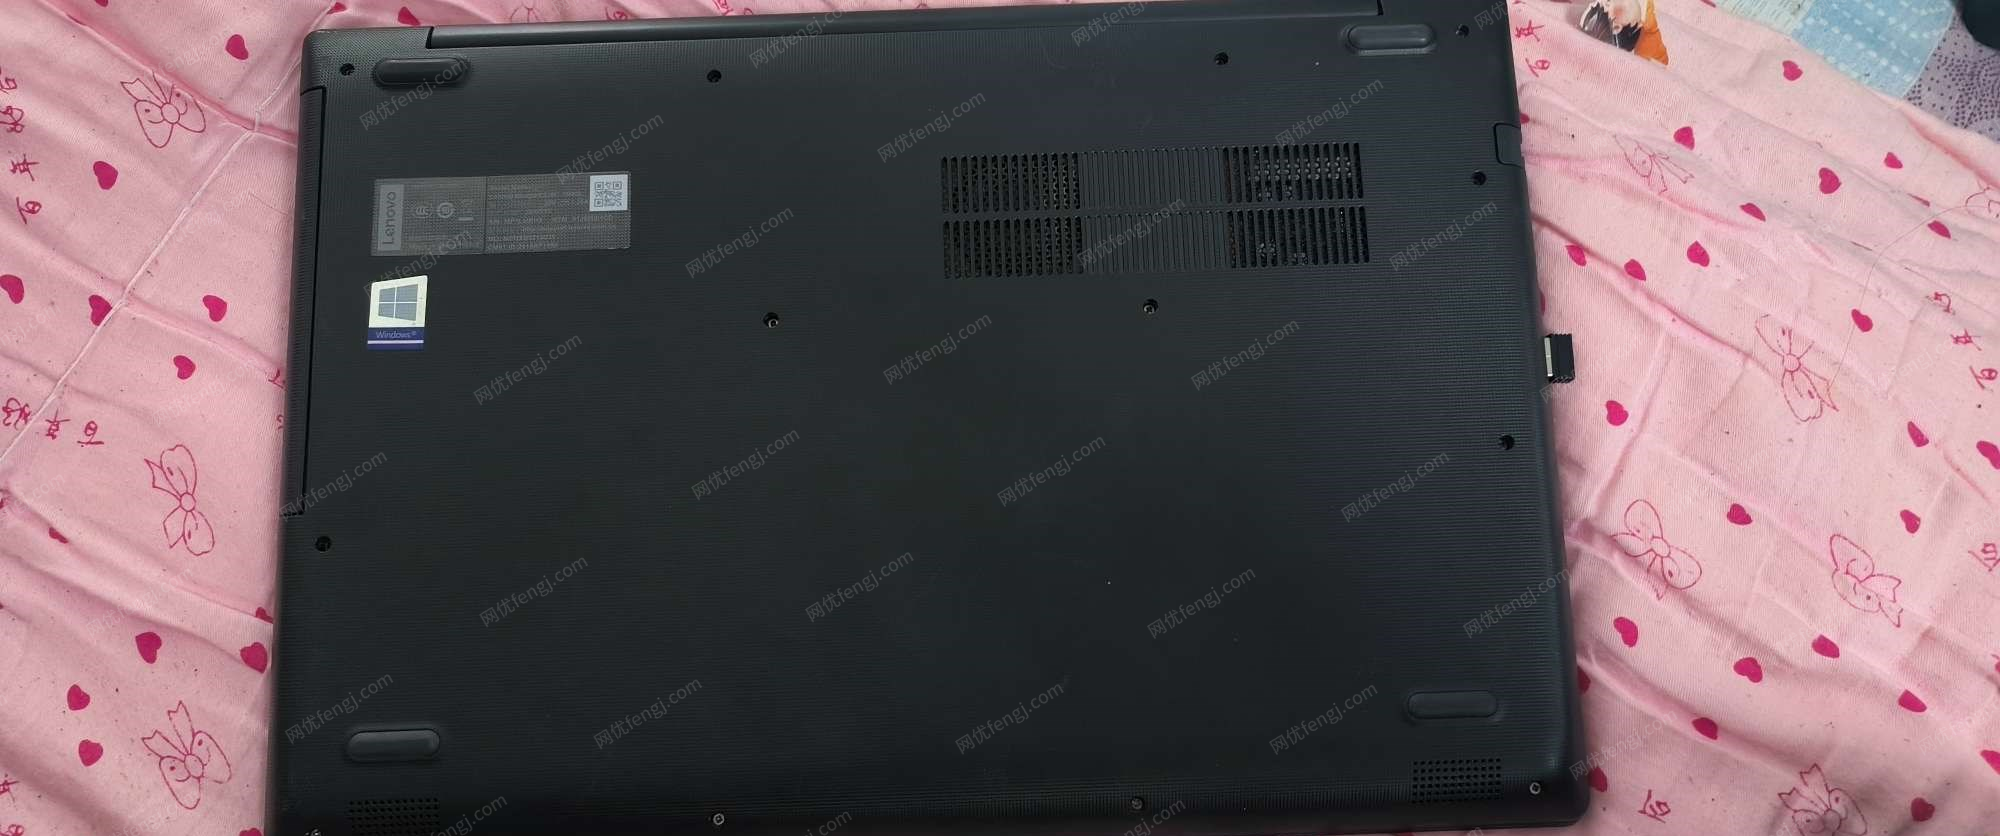 山东济南出售联想8代i5笔记本电脑